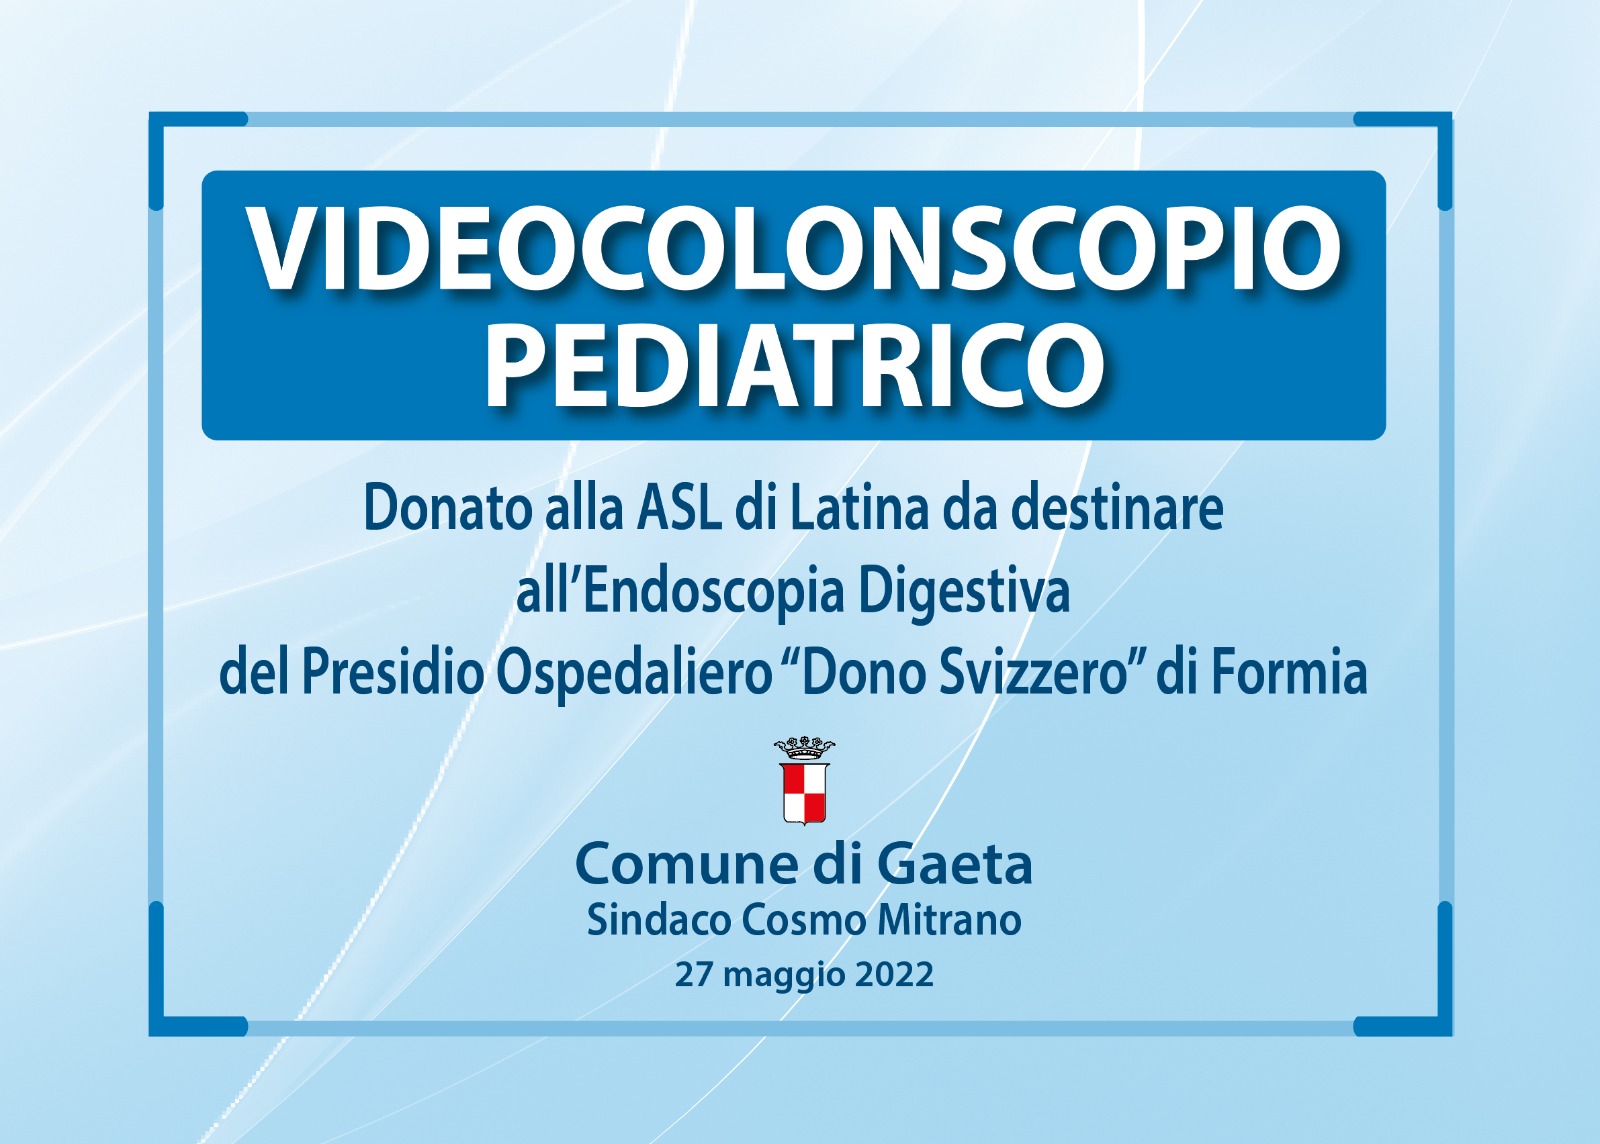 Videocolonscopio pediatrico donato al "Dono Svizzero" di Formia